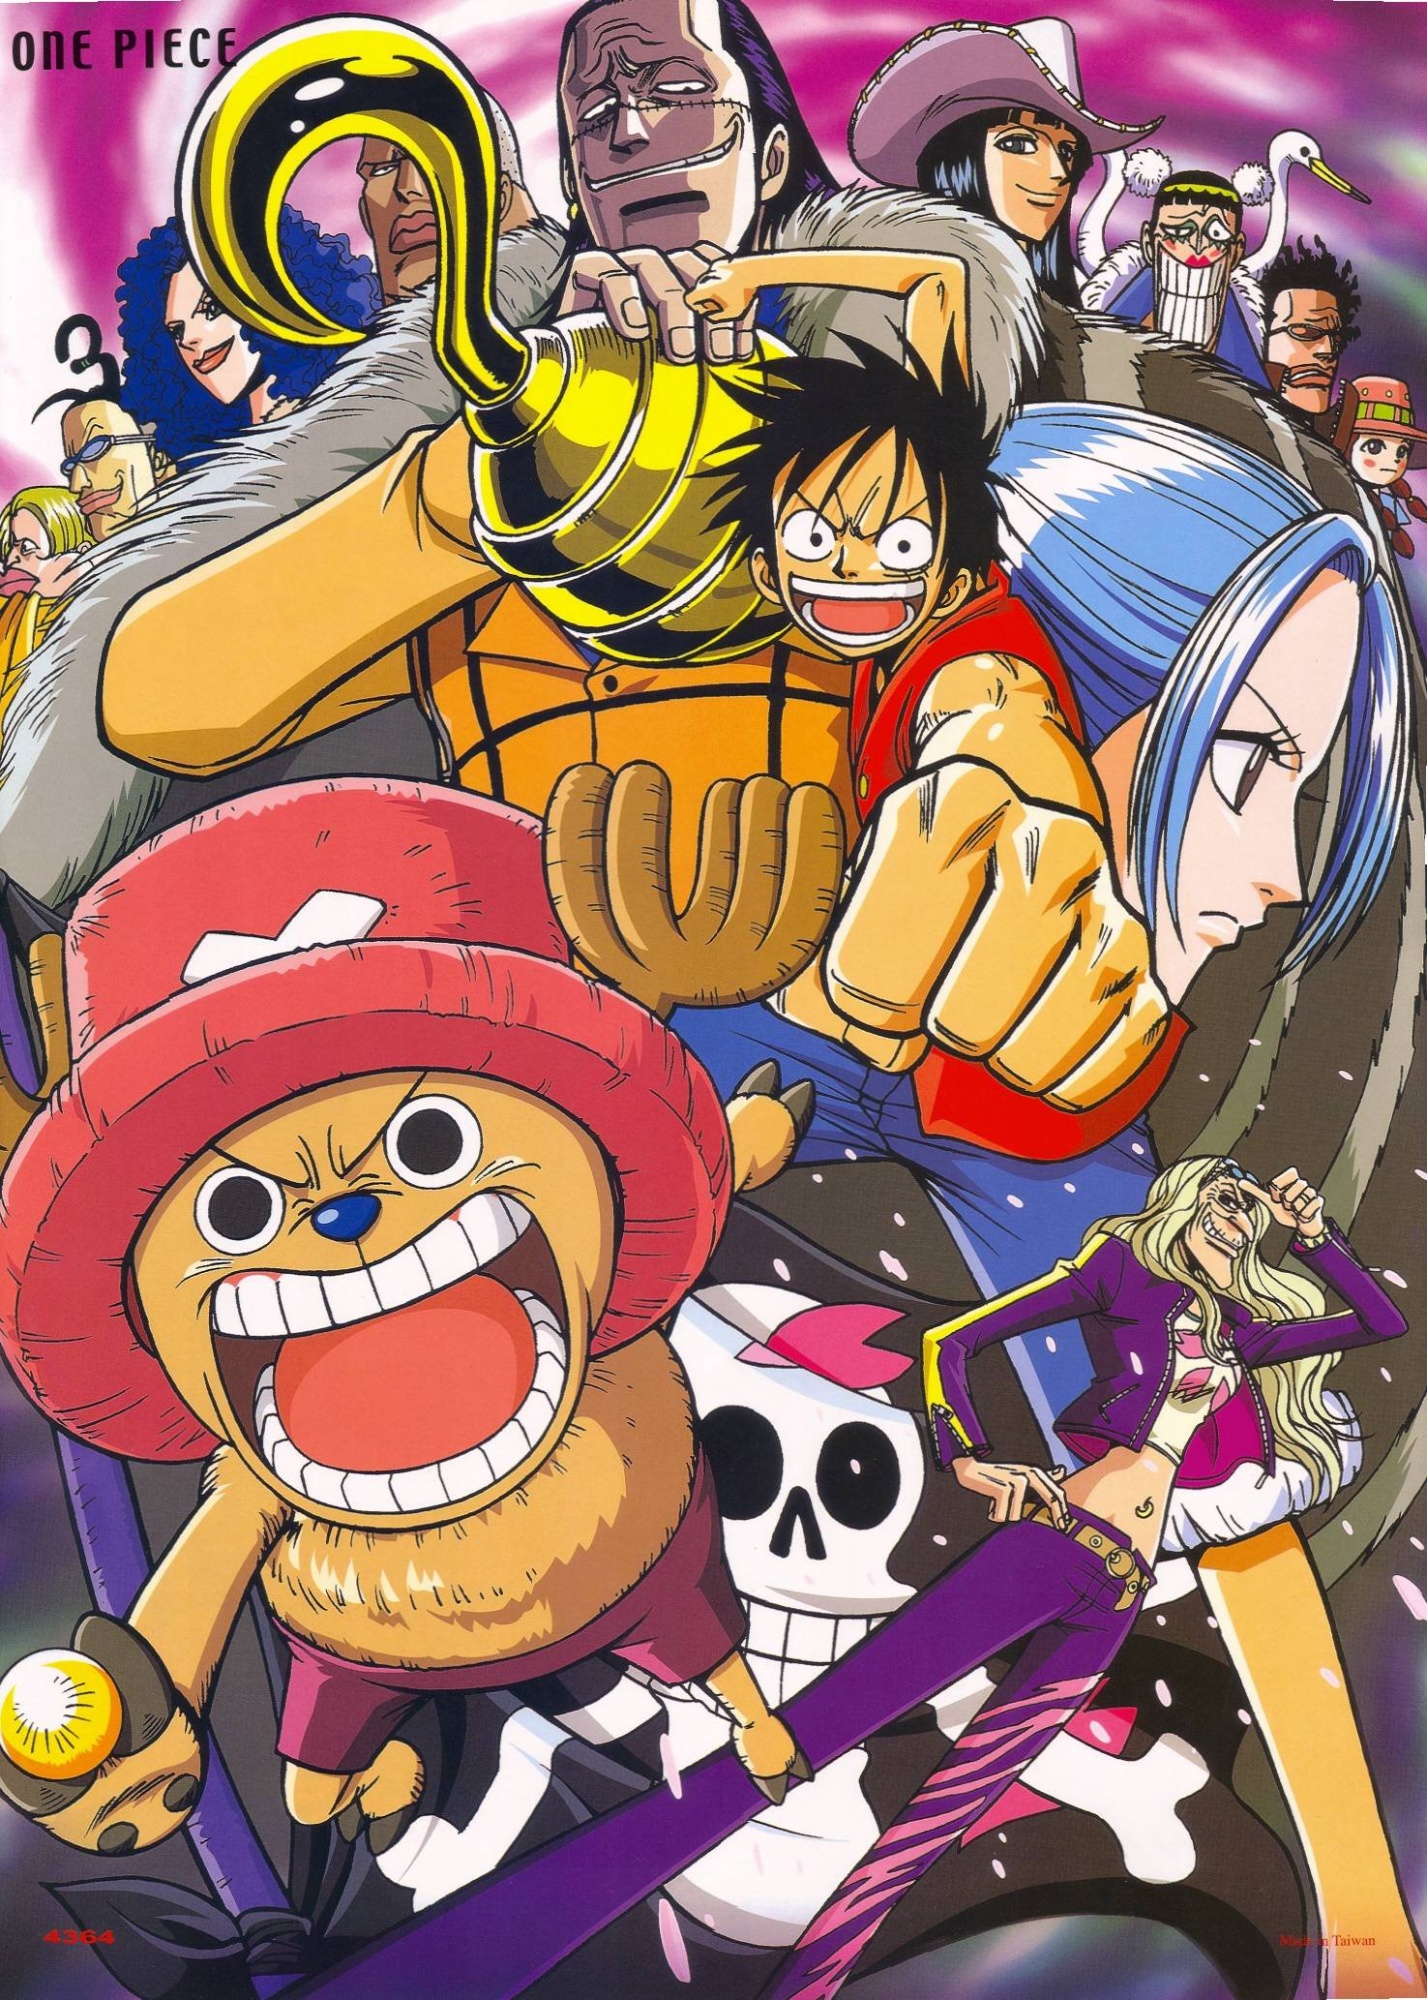 One Piece - My Anime Shelf